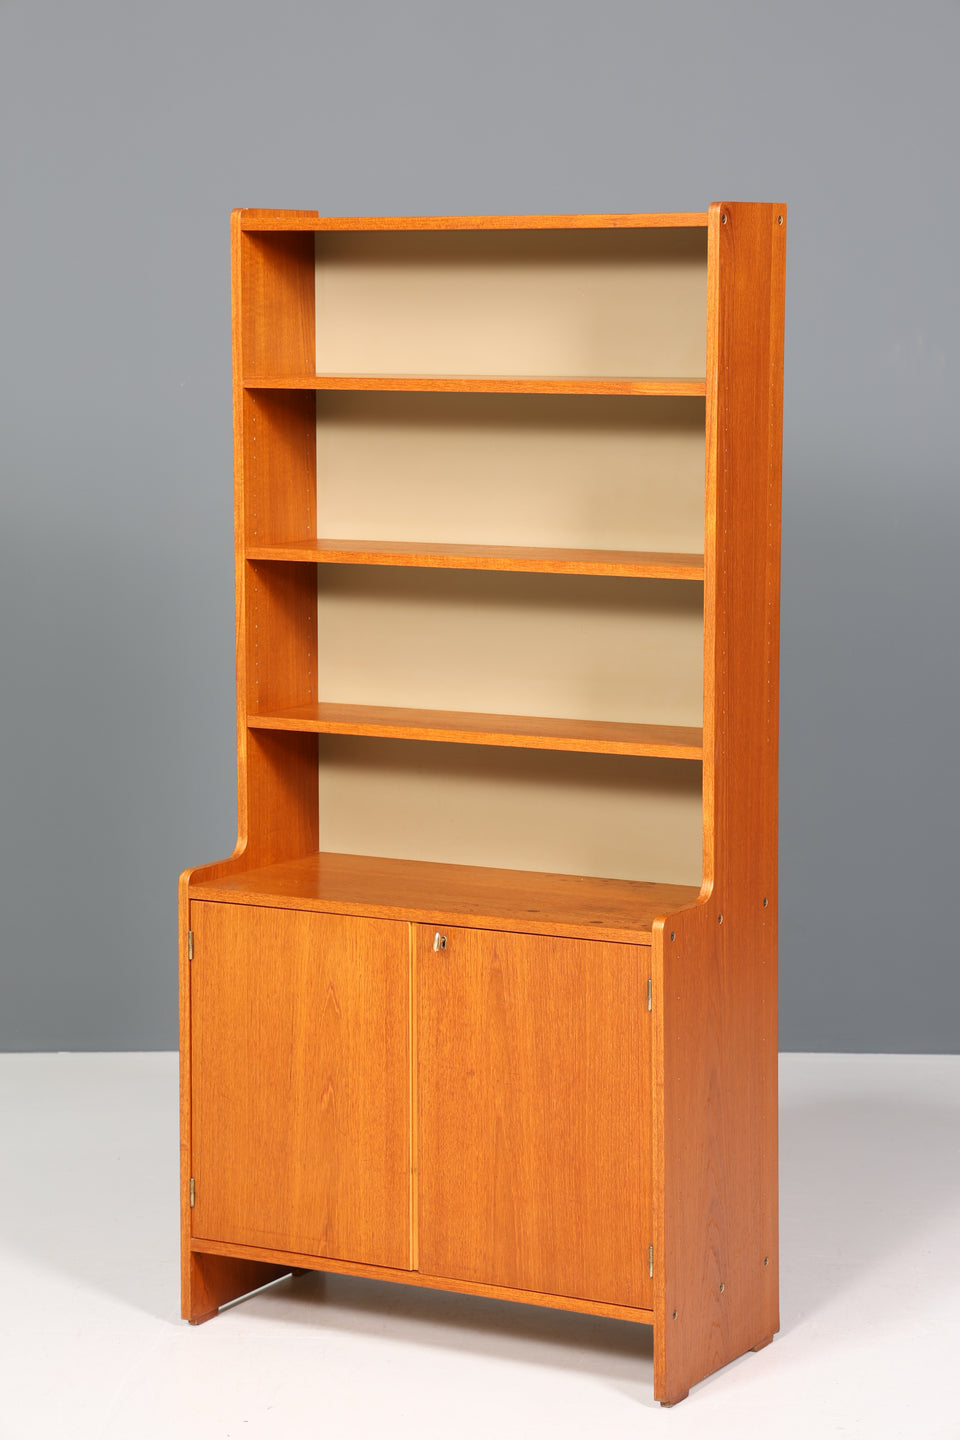 Wunderschöner Mid Century Schrank Vintage Bücherregal Retro Holz Regal Highboard 60er Jahre